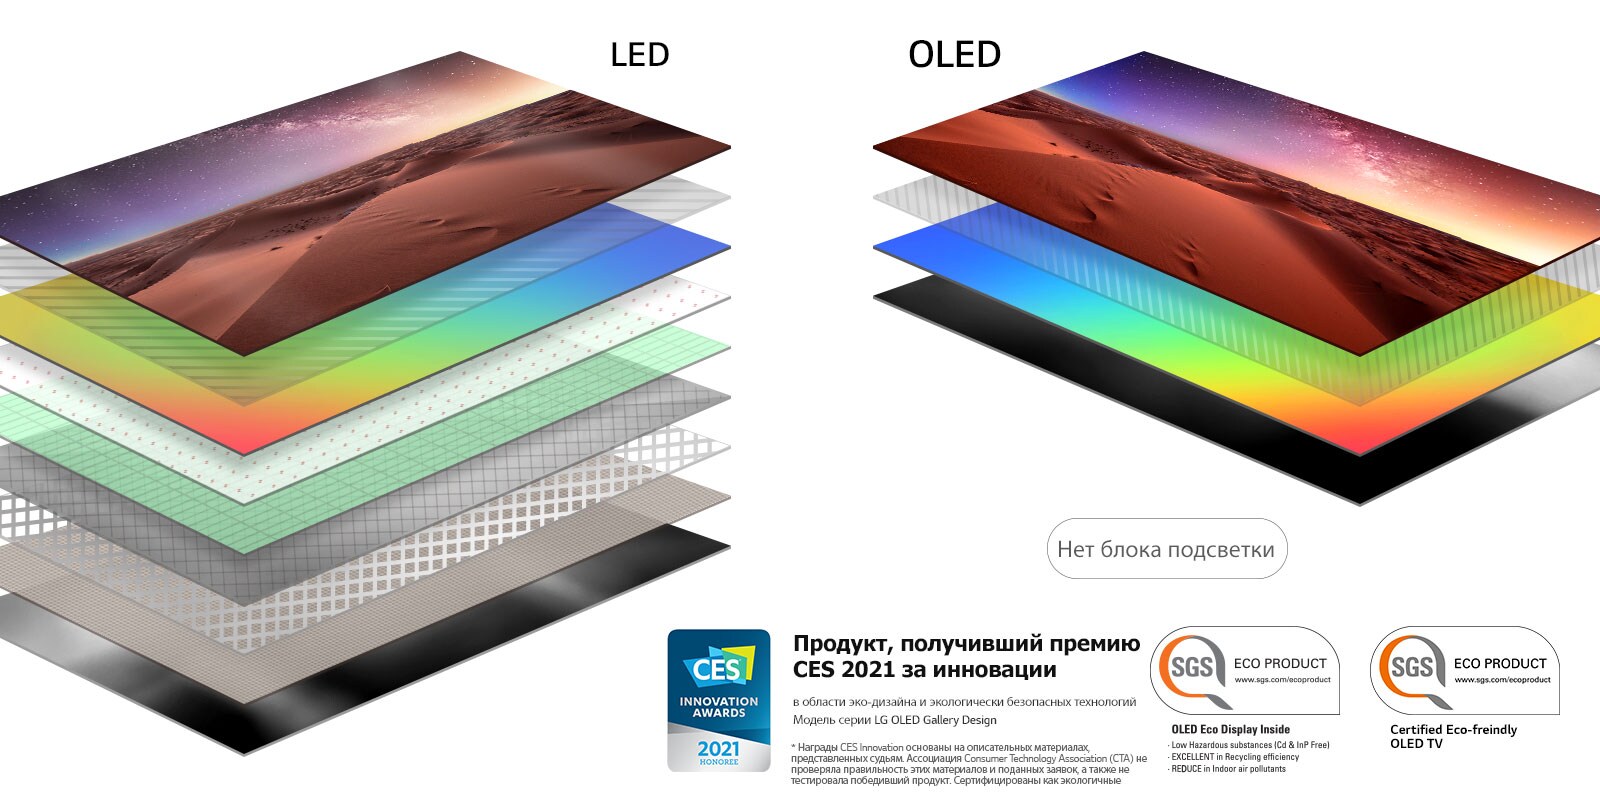 Сравнение состава слоев экранов LED-телевизоров с подсветкой и OLED-телевизоров с самоподсвечивающимися пикселями (просмотр видео)